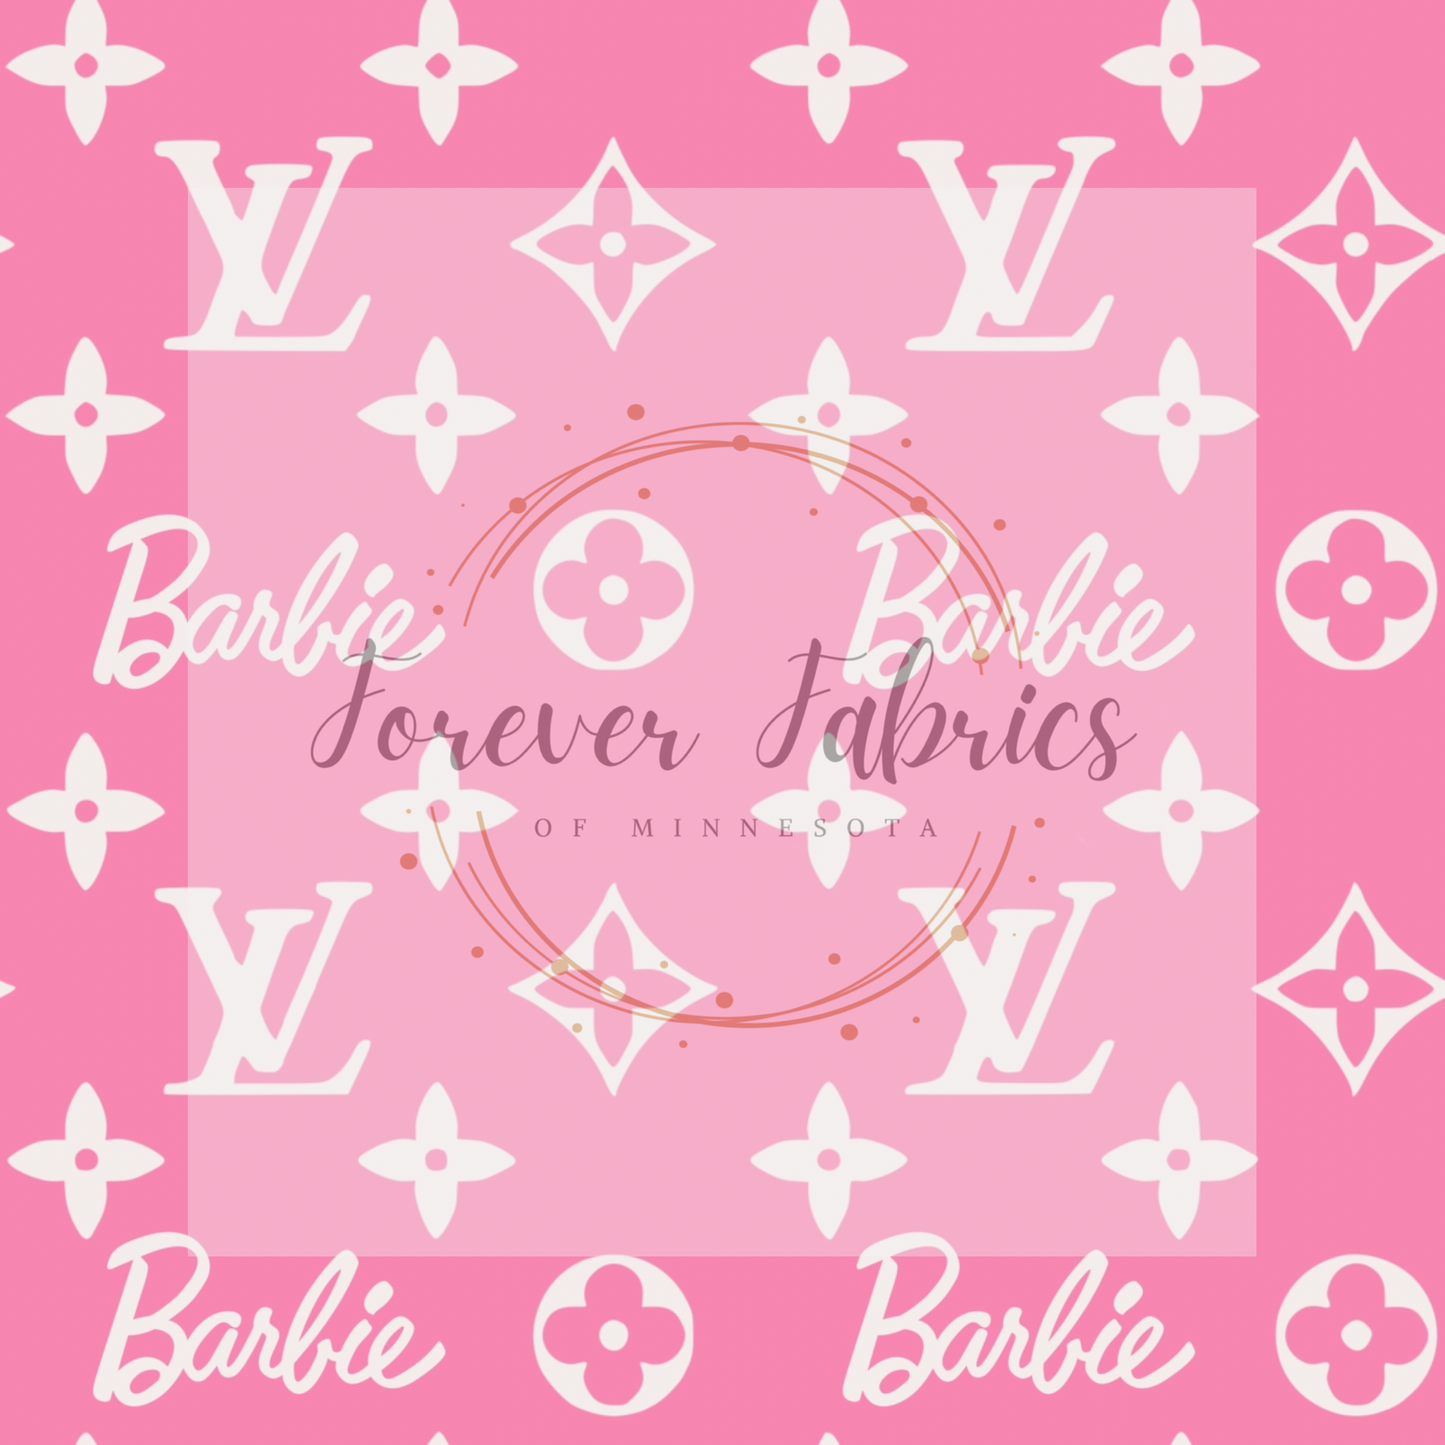 Barbie Louis Vuitton 